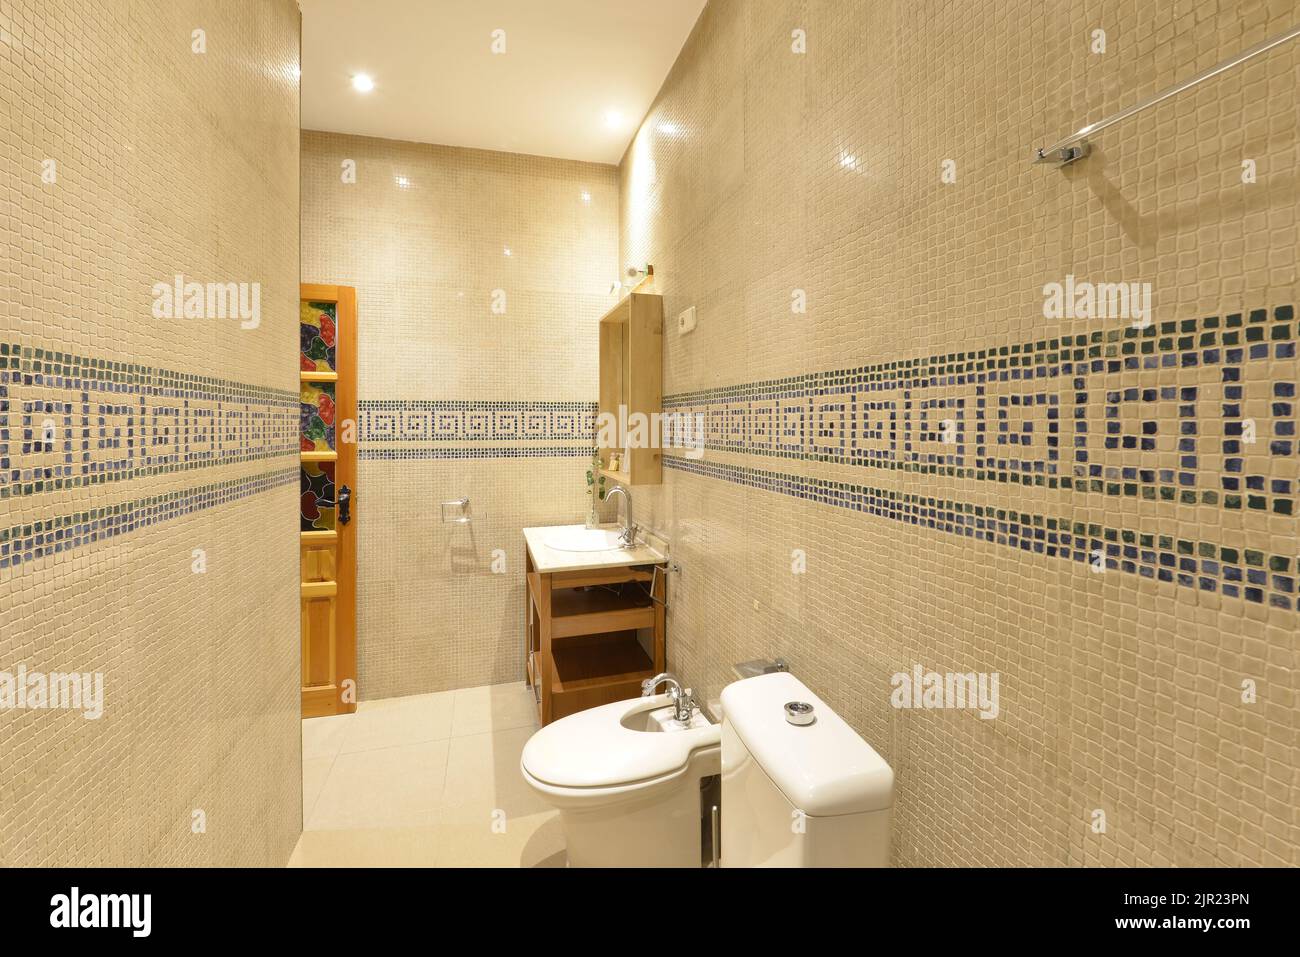 Salle de bains avec évier en porcelaine blanche, armoire en bois ouverte, miroir avec cadre assorti et carreaux de mosaïque avec bordure bleue Banque D'Images